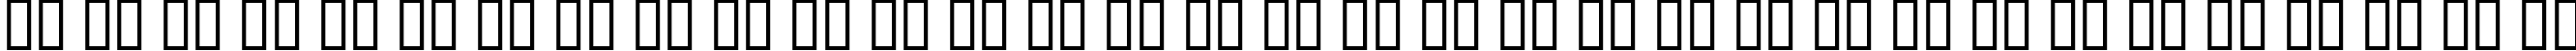 Пример написания русского алфавита шрифтом Digital Readout Condensed